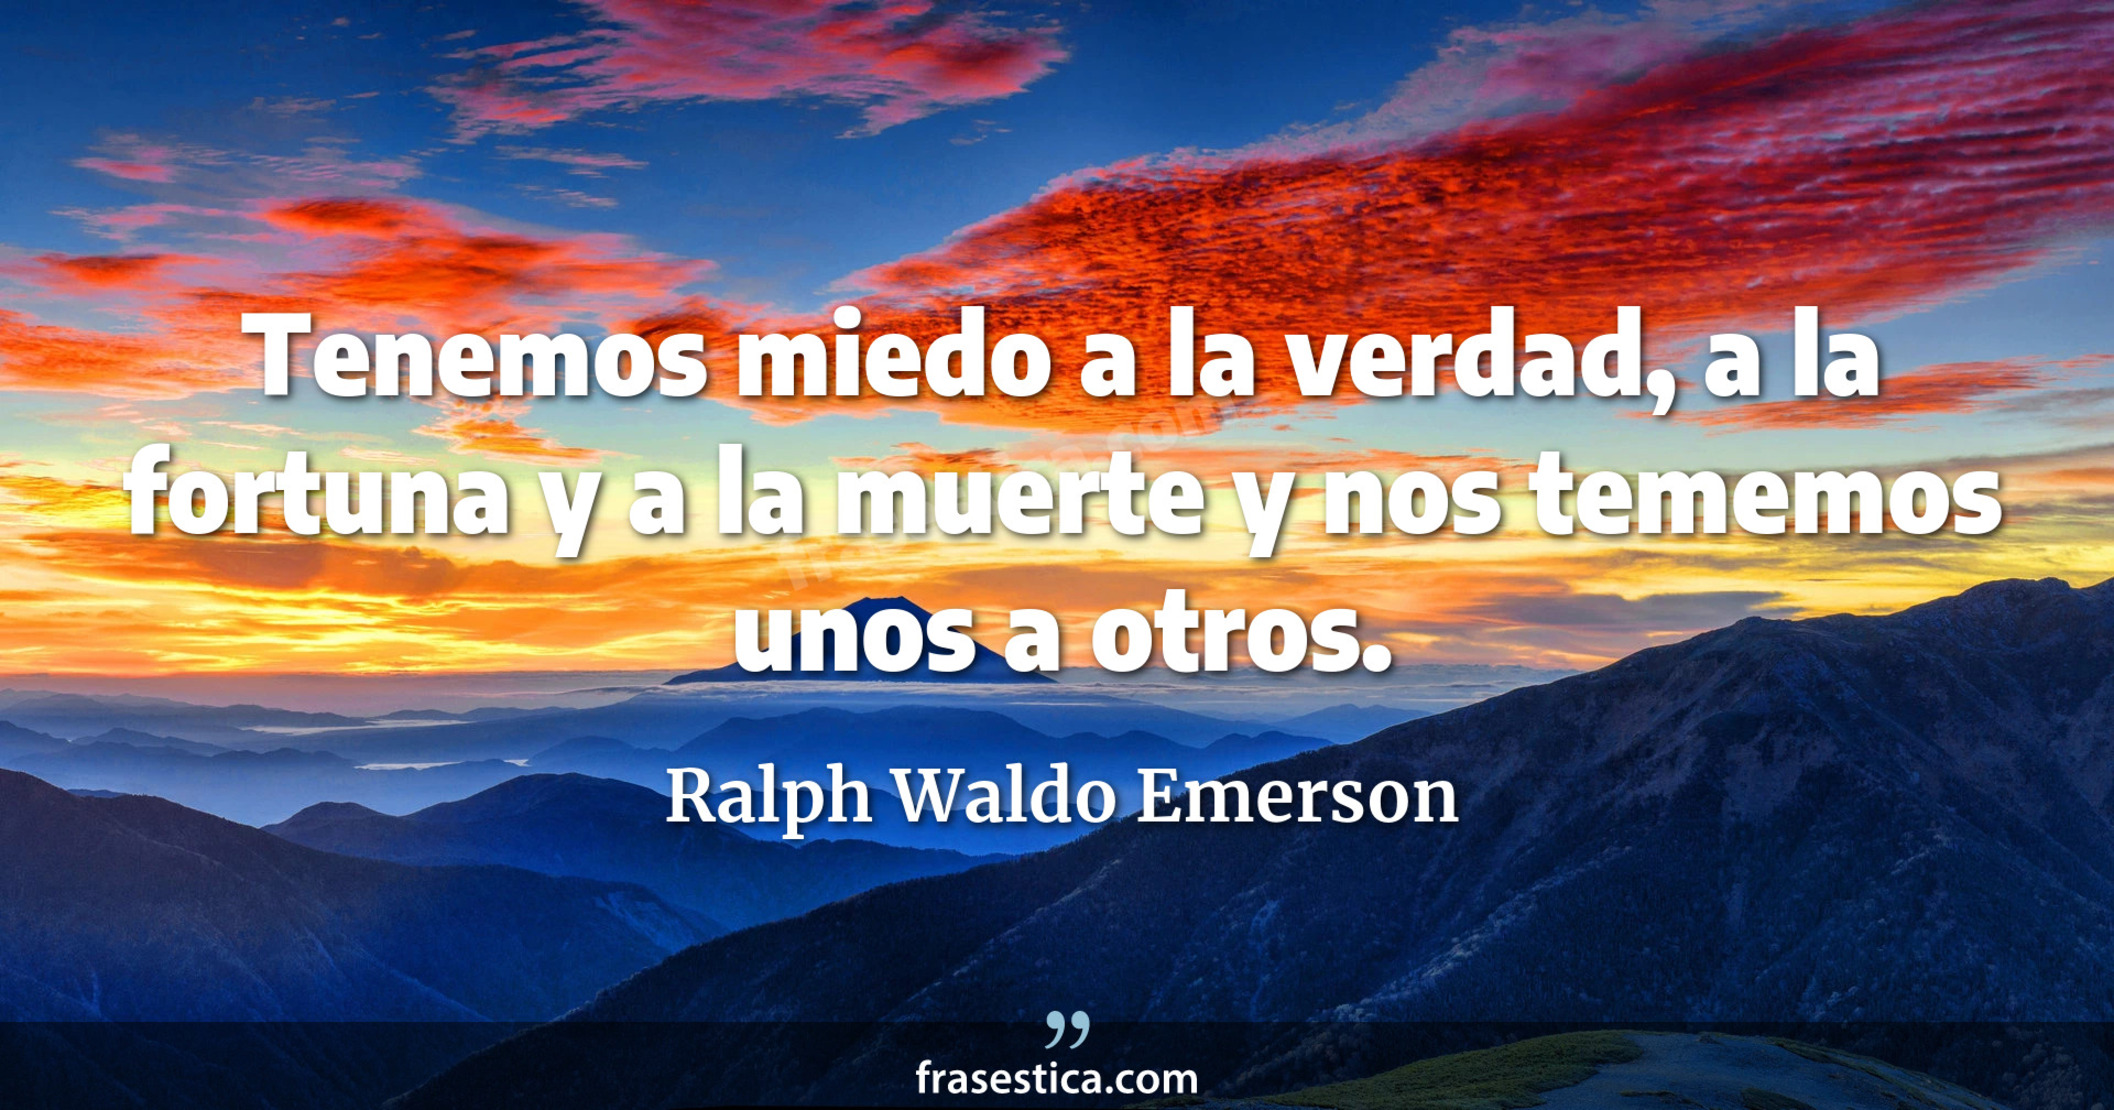 Tenemos miedo a la verdad, a la fortuna y a la muerte y nos tememos unos a otros. - Ralph Waldo Emerson